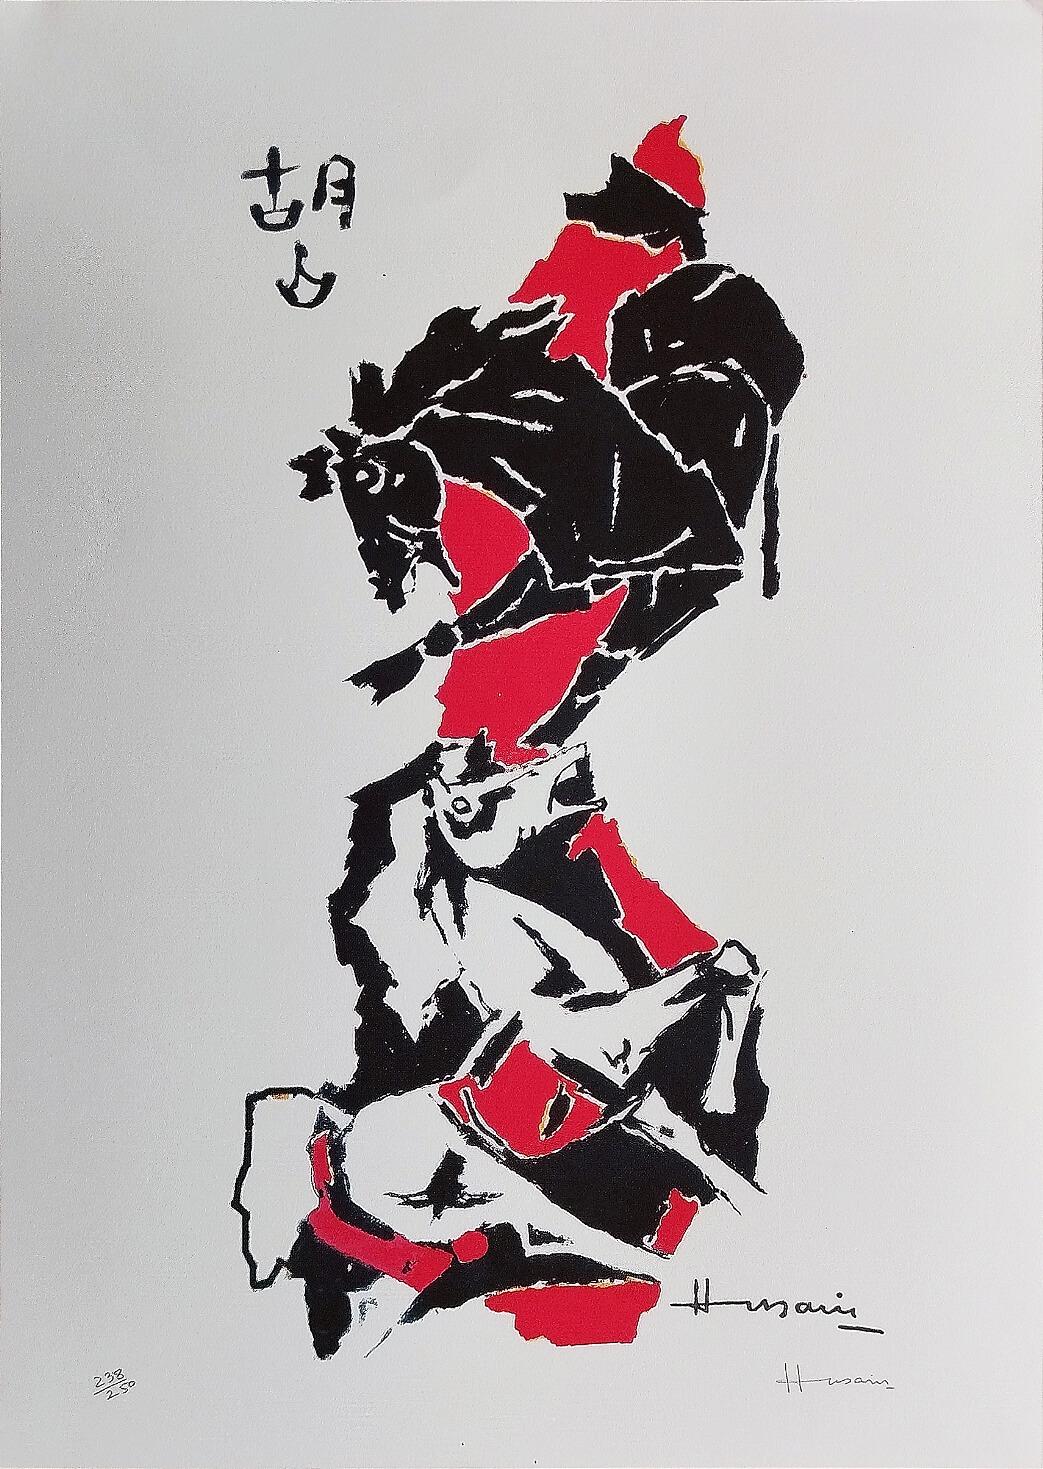 Serie Pferd, Serigrafie auf Papier, schwarz, rot, von dem modernen Künstler M.F. Husain